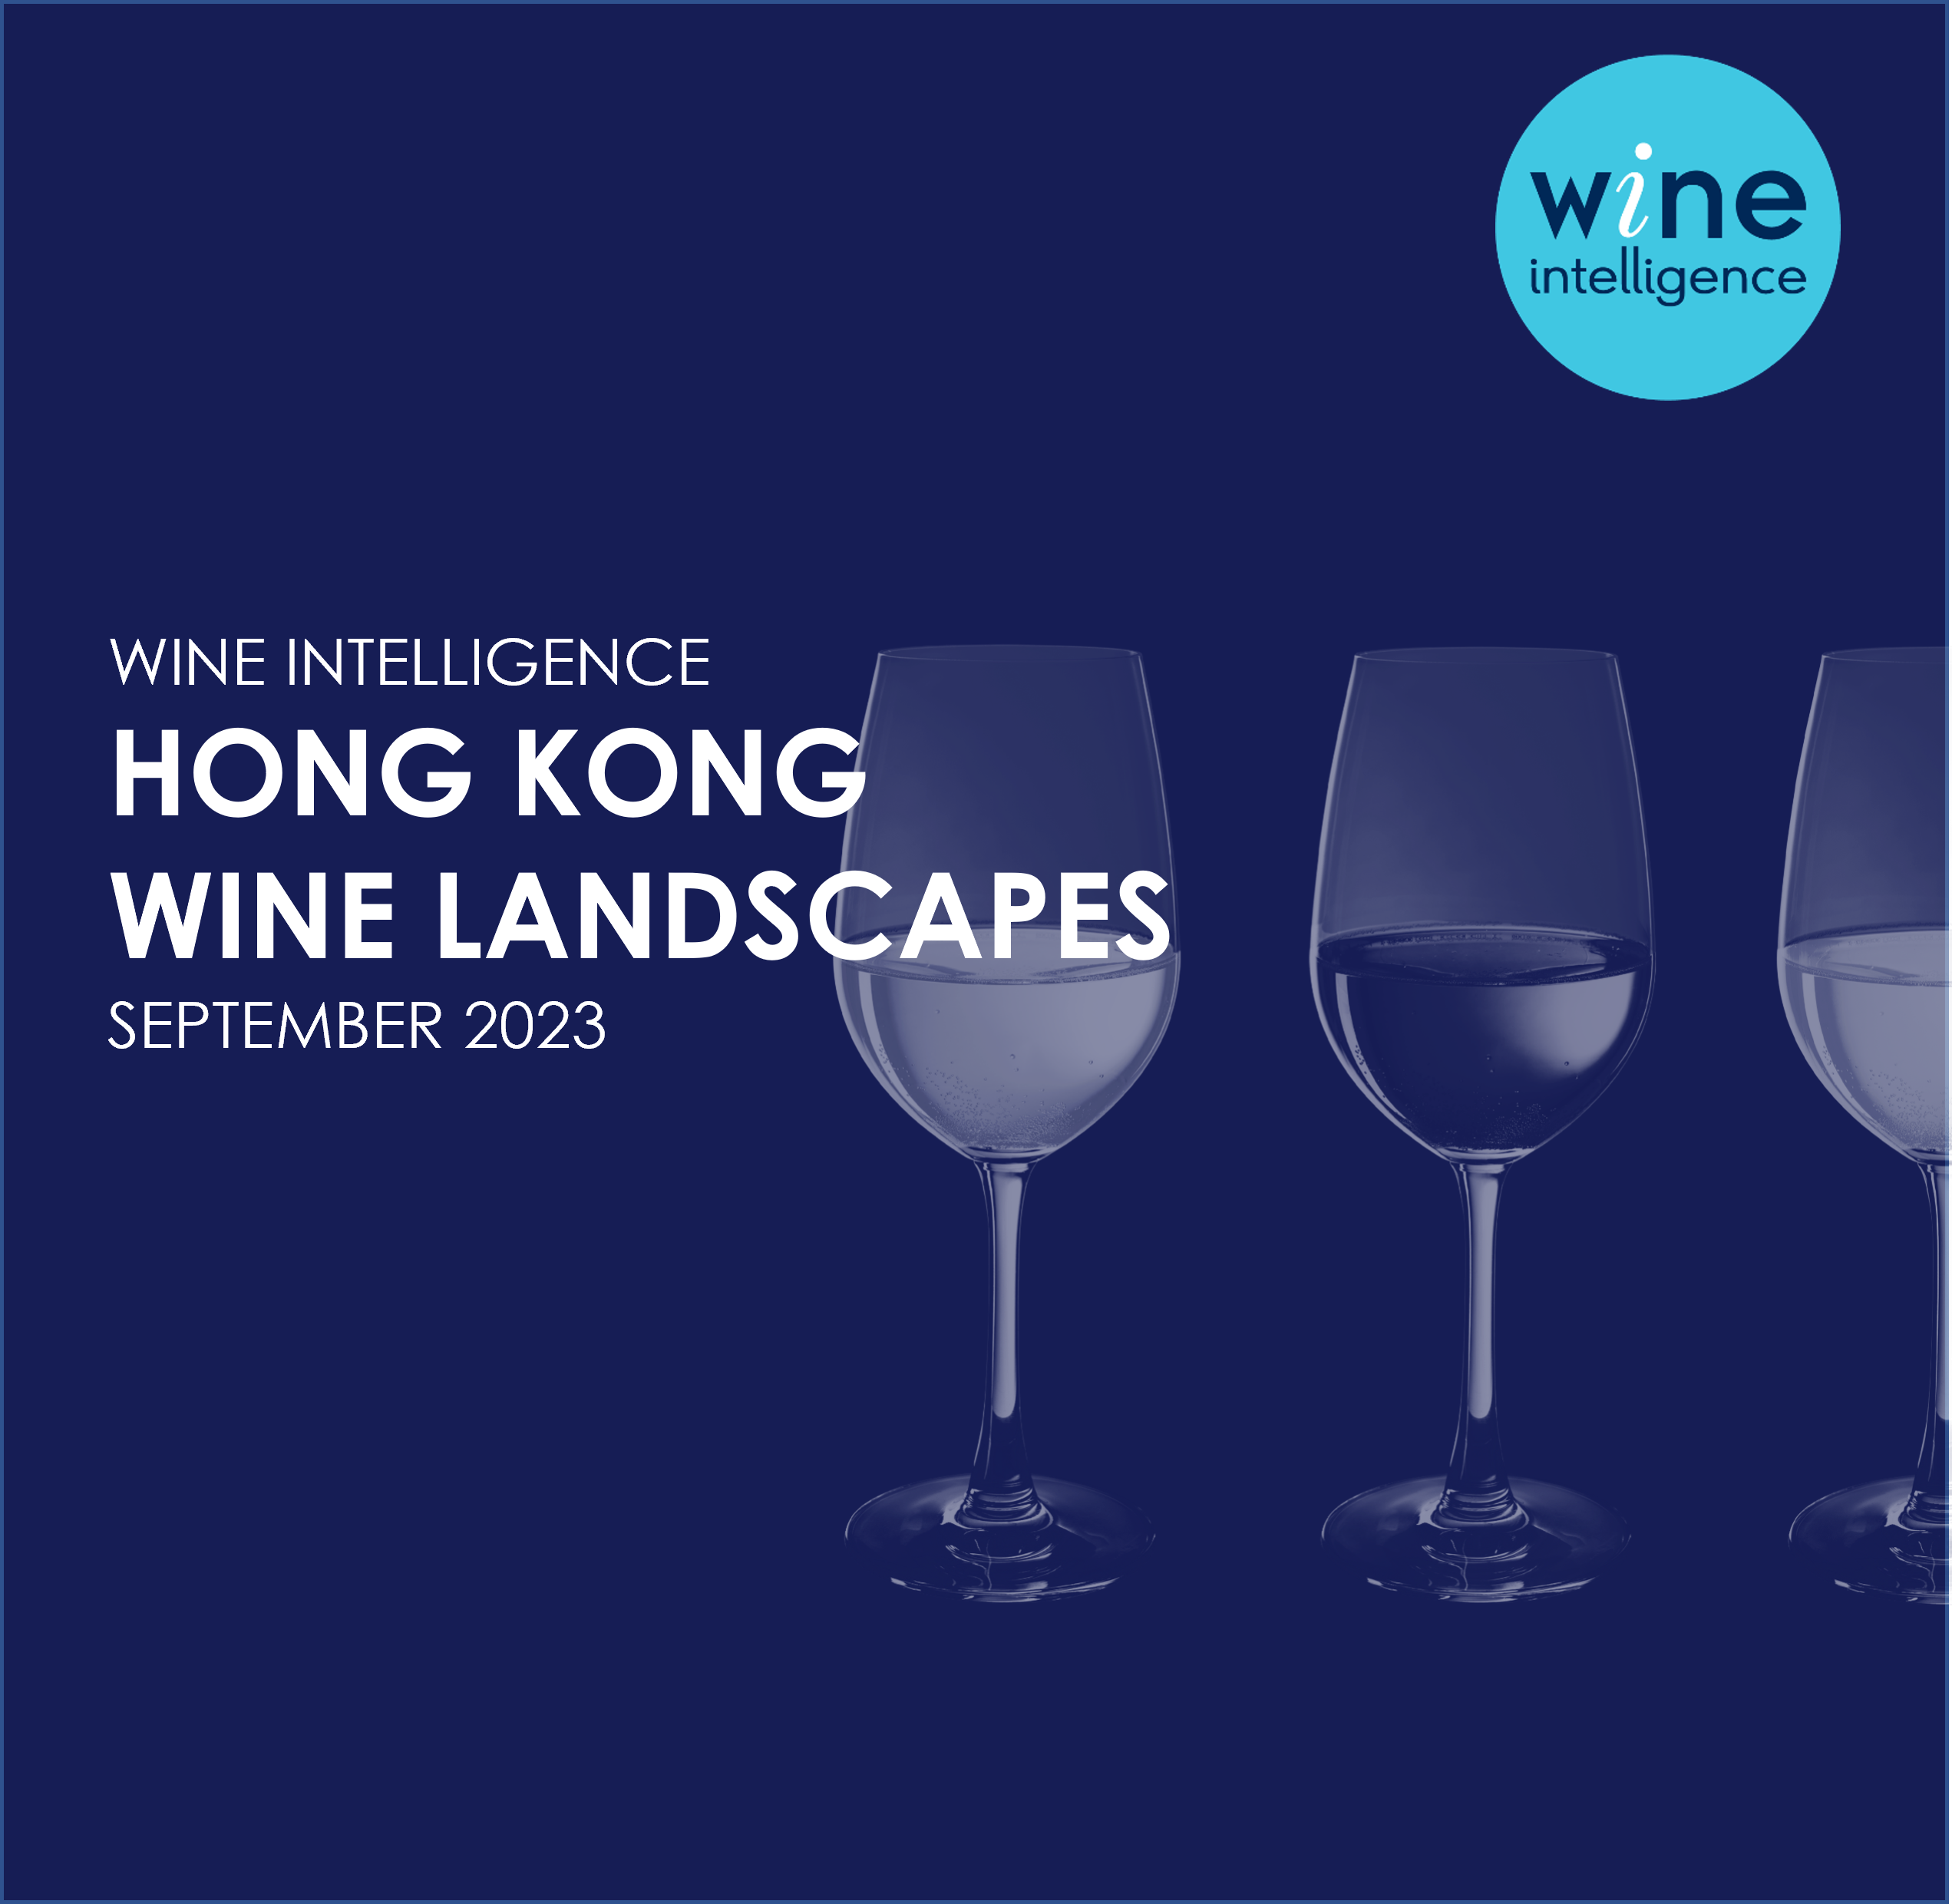 Hong Kong Wine Landscapes 2023 - Wine Market Landscape Reports